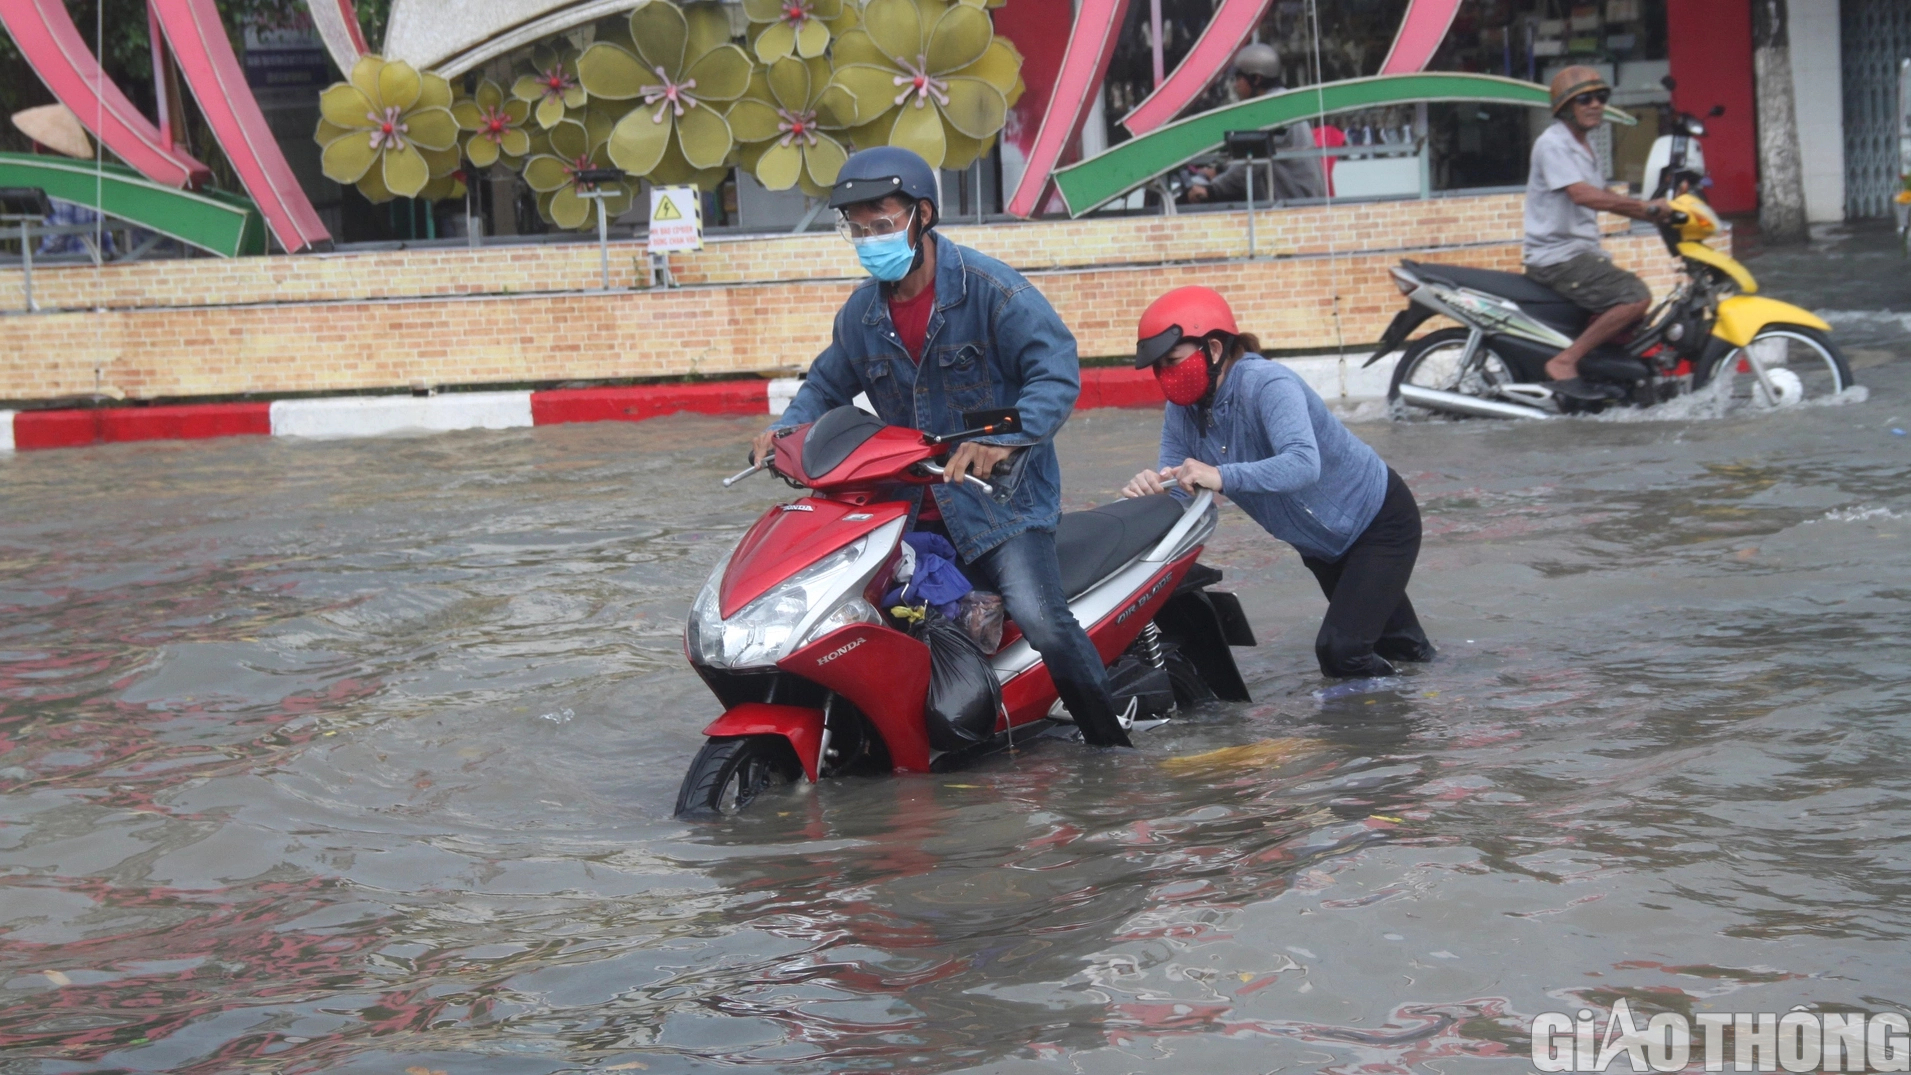 Người dân Bạc Liêu bì bõm dẫn xe lội nước sau cơn mưa lớn kéo dài - Ảnh 5.